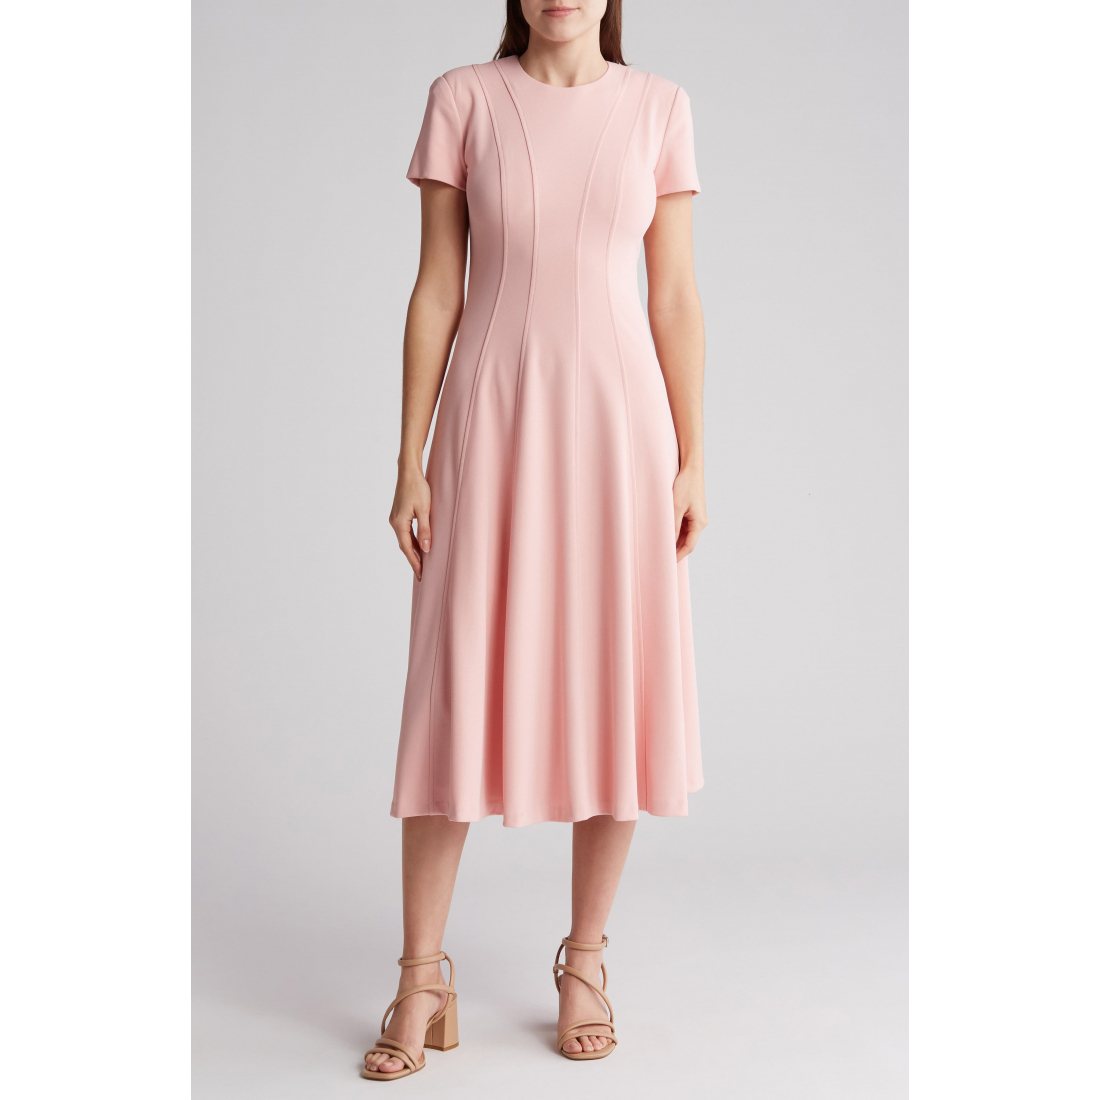 'Short Sleeve' A-Linien Kleid für Damen